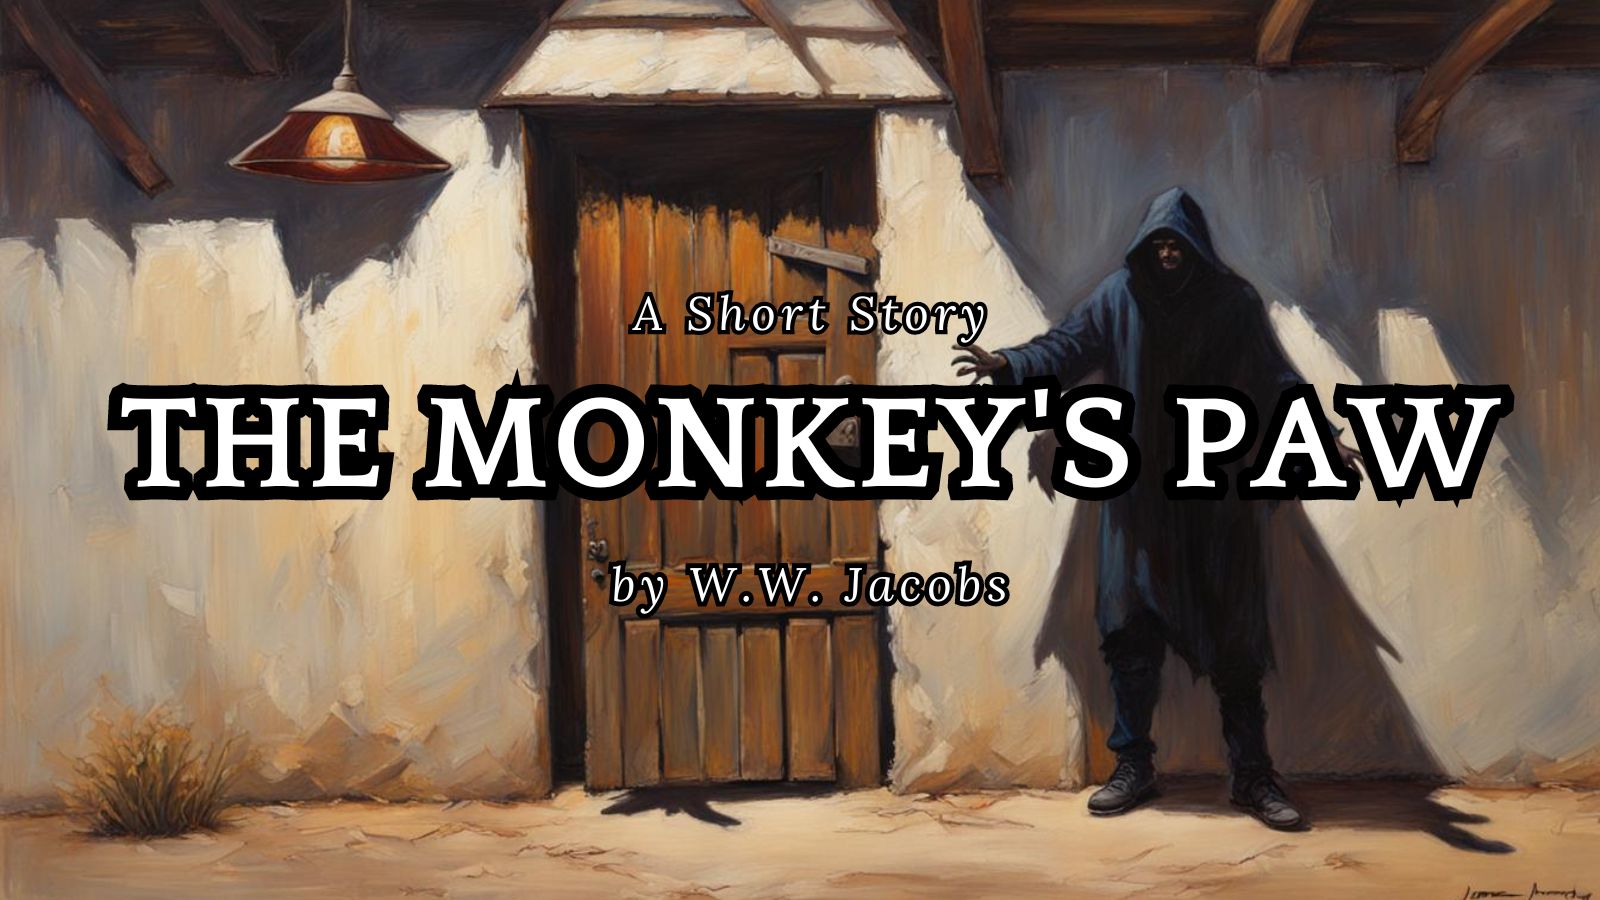 THE Monkey's Paw by W.W. Jacobs